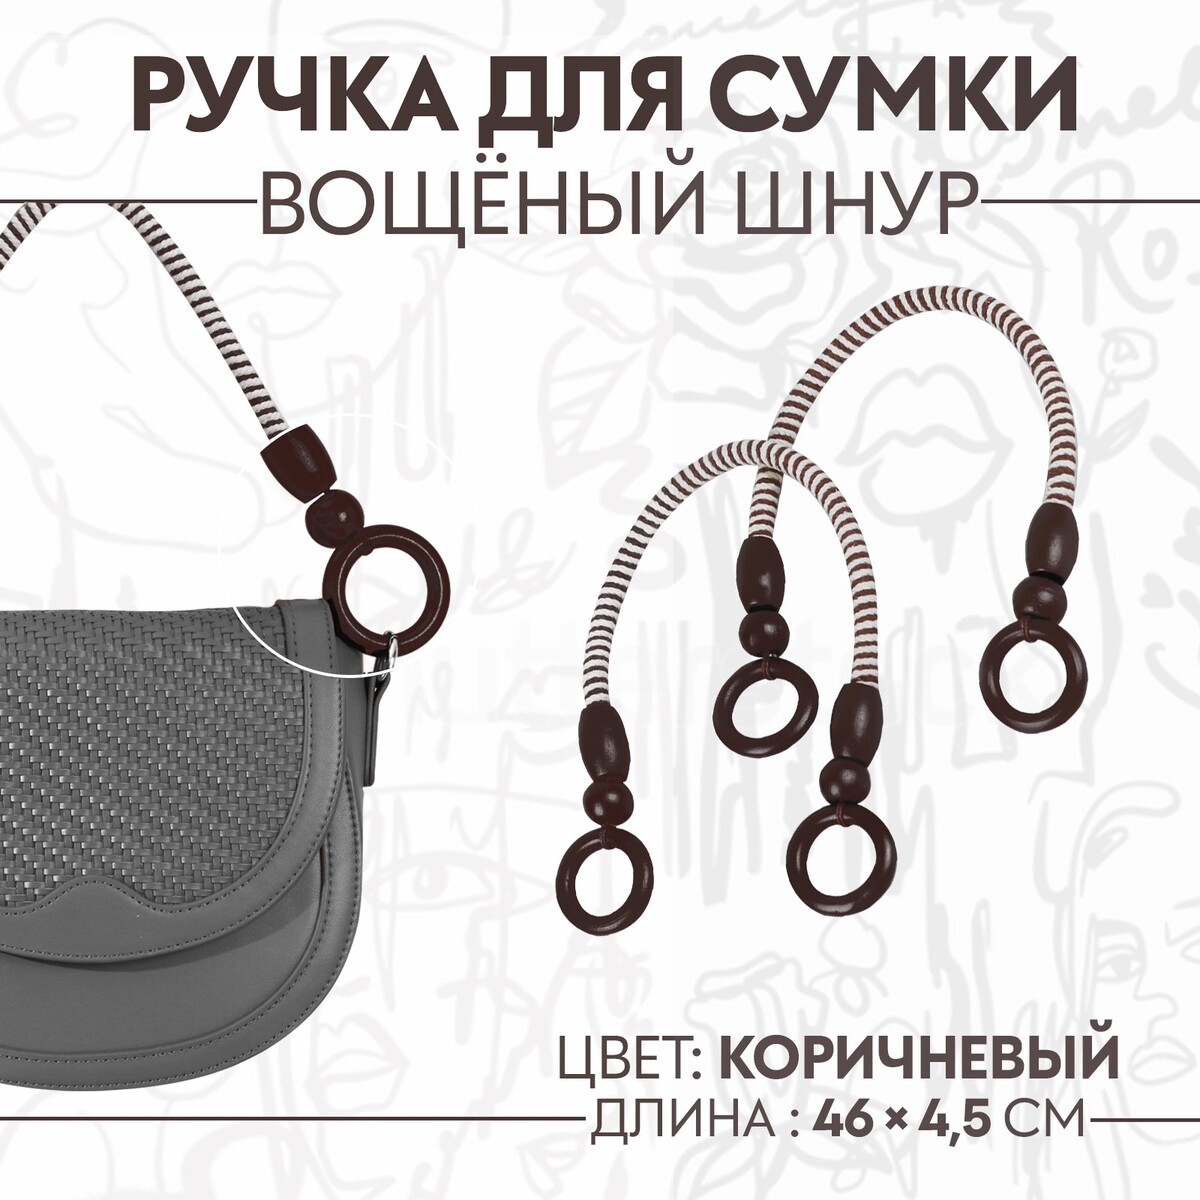 Ручки для сумки, 2 шт, вощеный шнур, 46 × 4,5 см, цвет коричневый